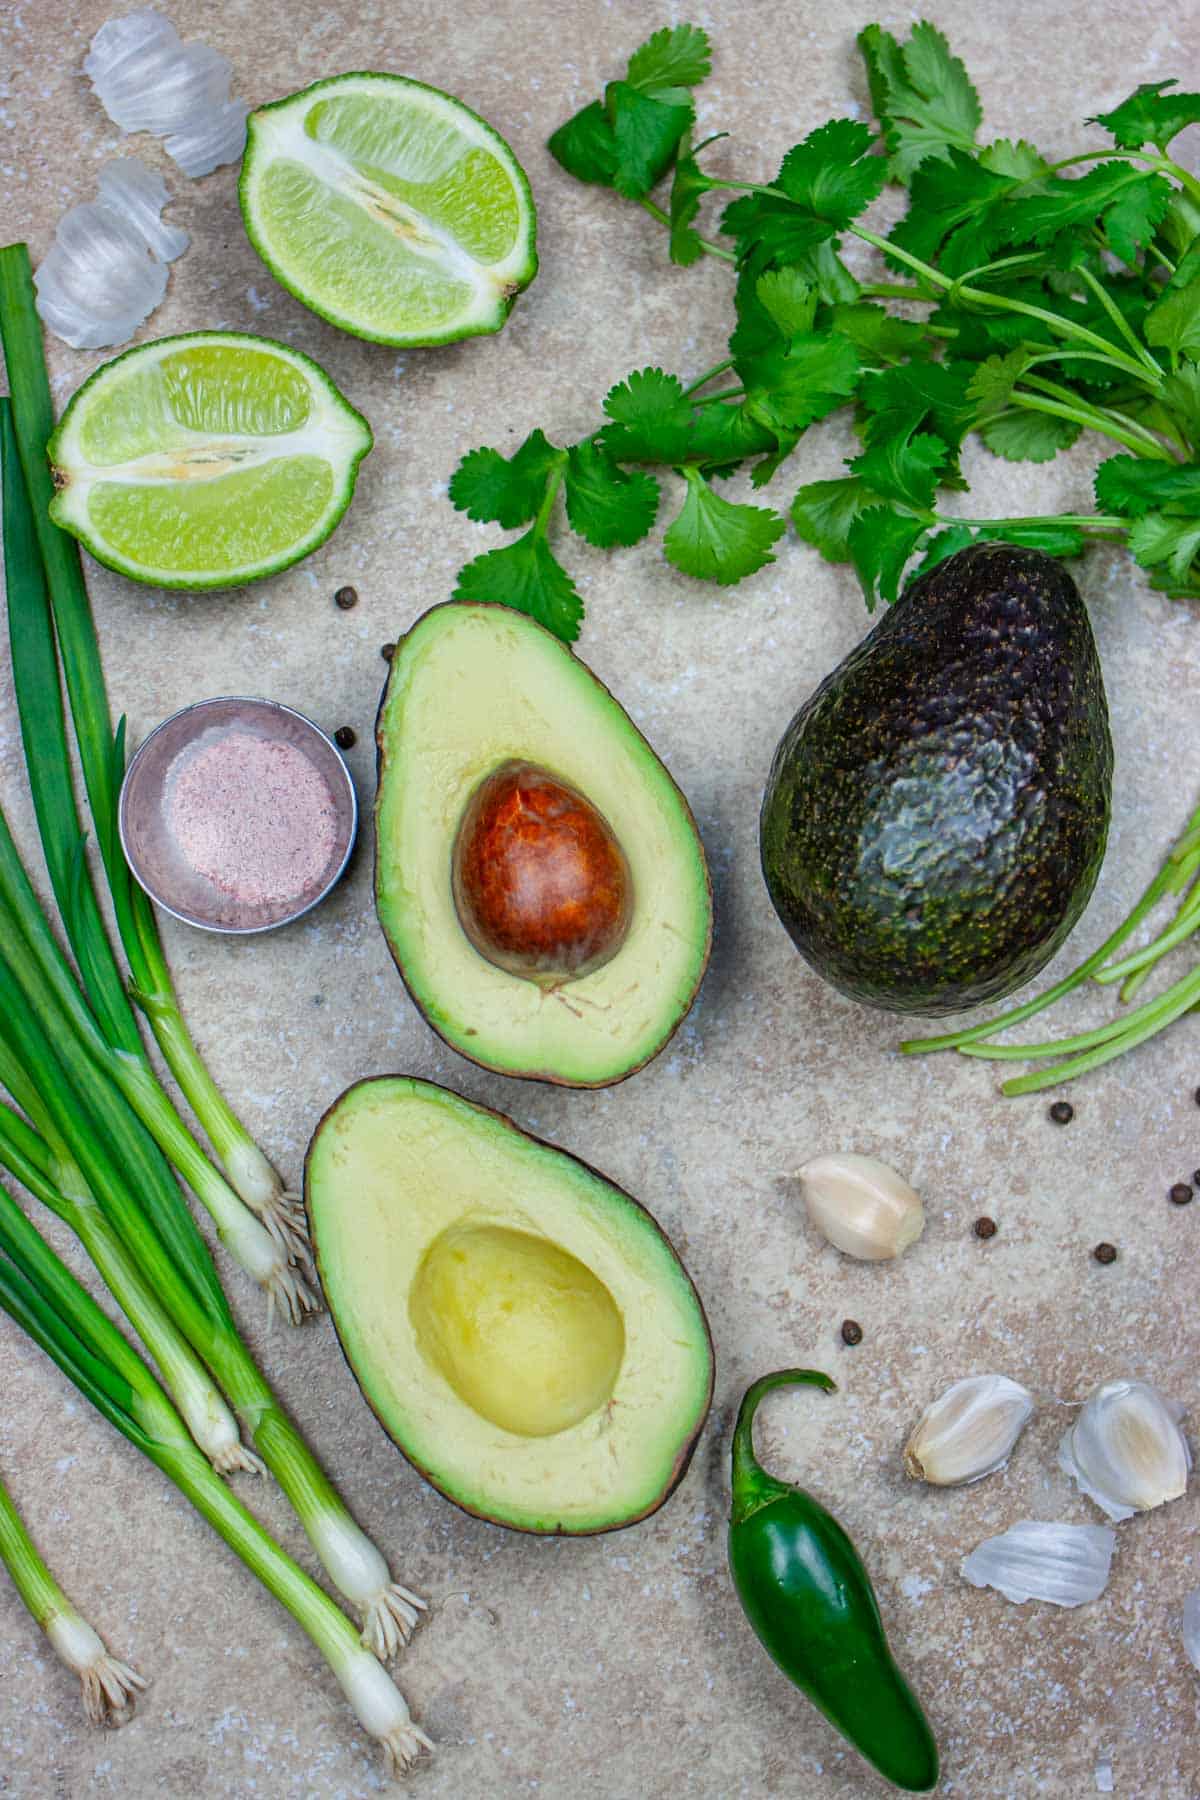 Ingredients for guacamole, including avocado halves, green onions, jalapeno, garlic, cilantro, and black salt on a grey board.